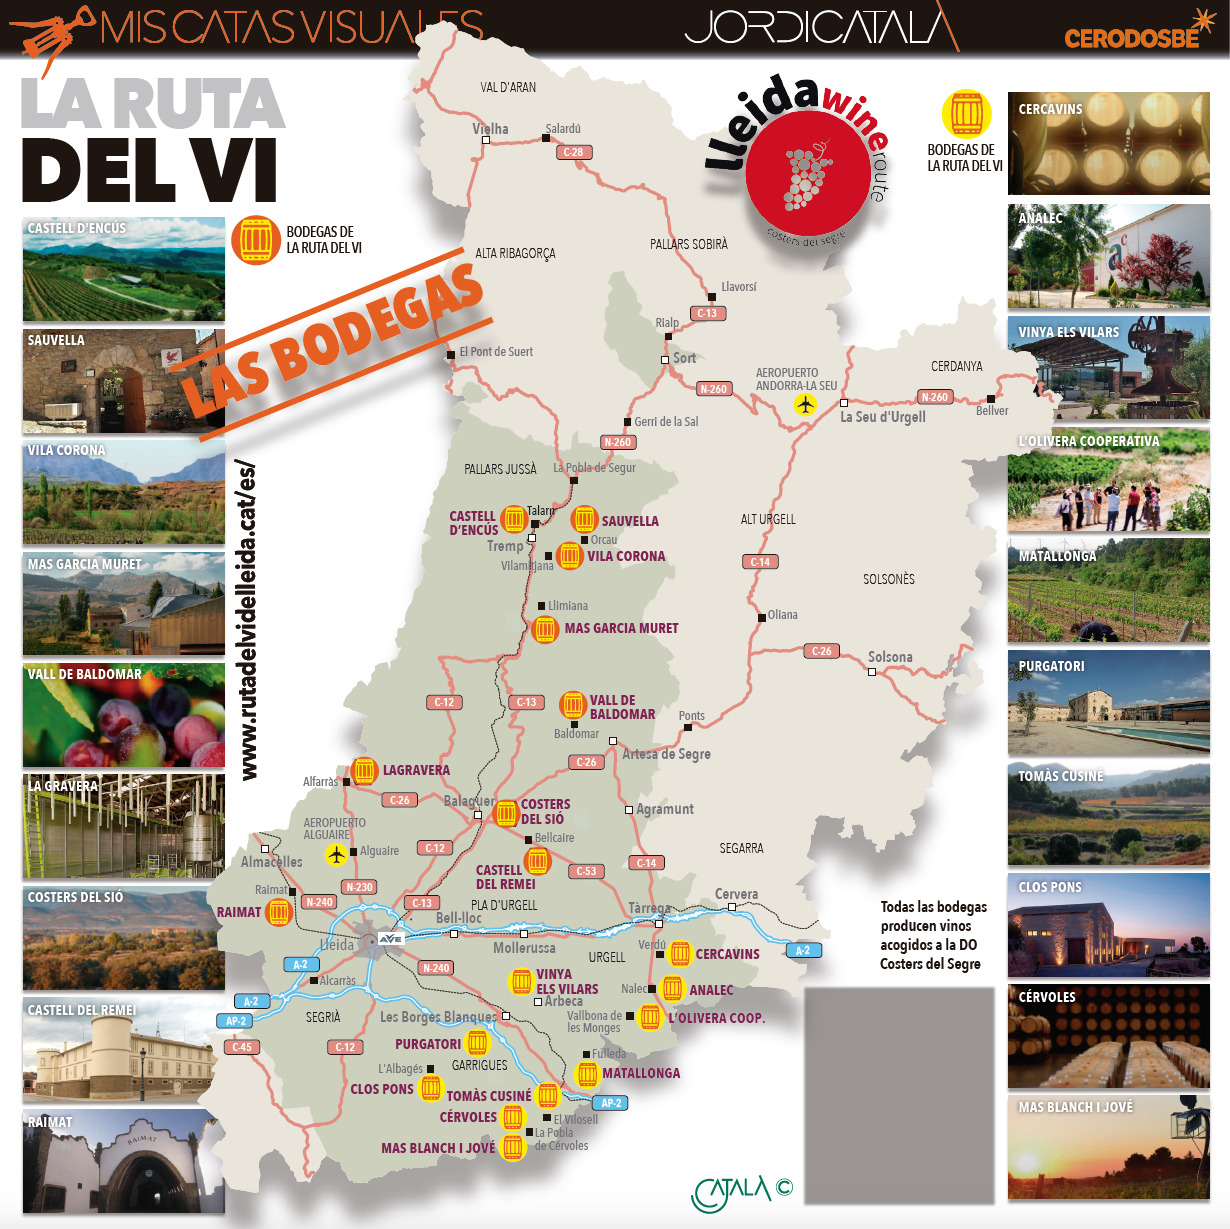 La Ruta del Vi de Lleida es una de las mÃ¡s importantes de CataluÃ±a. InfografÃ­a: Jordi CatalÃ 